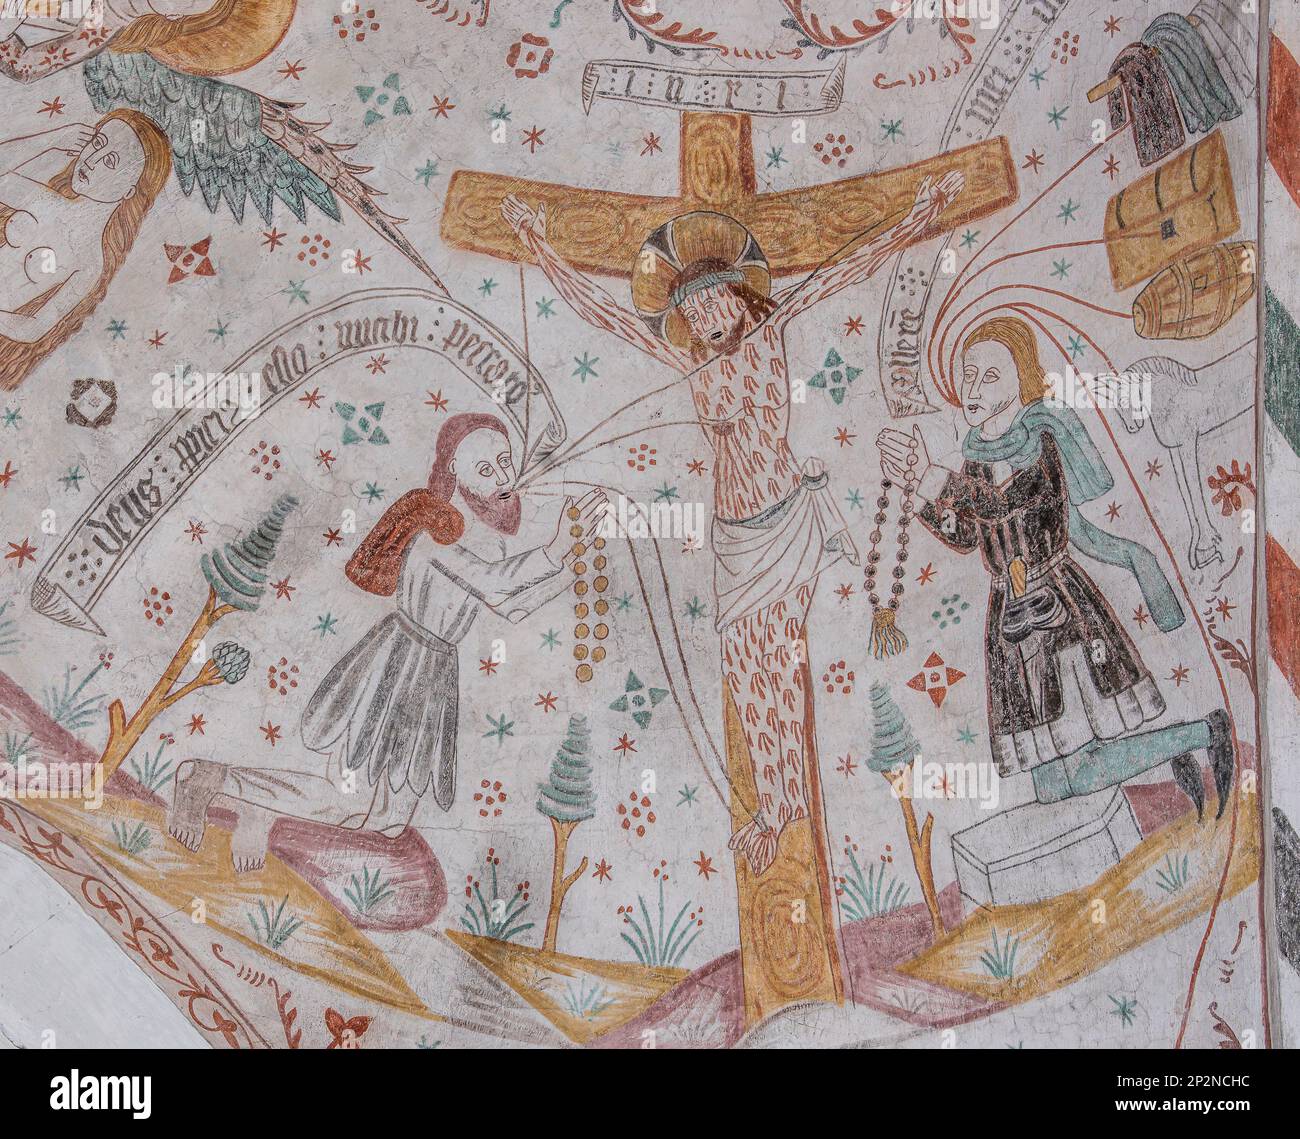 Un uomo ricco e povero che si inginocchia davanti a Gesù sulla croce, un antico dipinto murale nella chiesa di Keldby, Danimarca, 10 ottobre 2022 Foto Stock